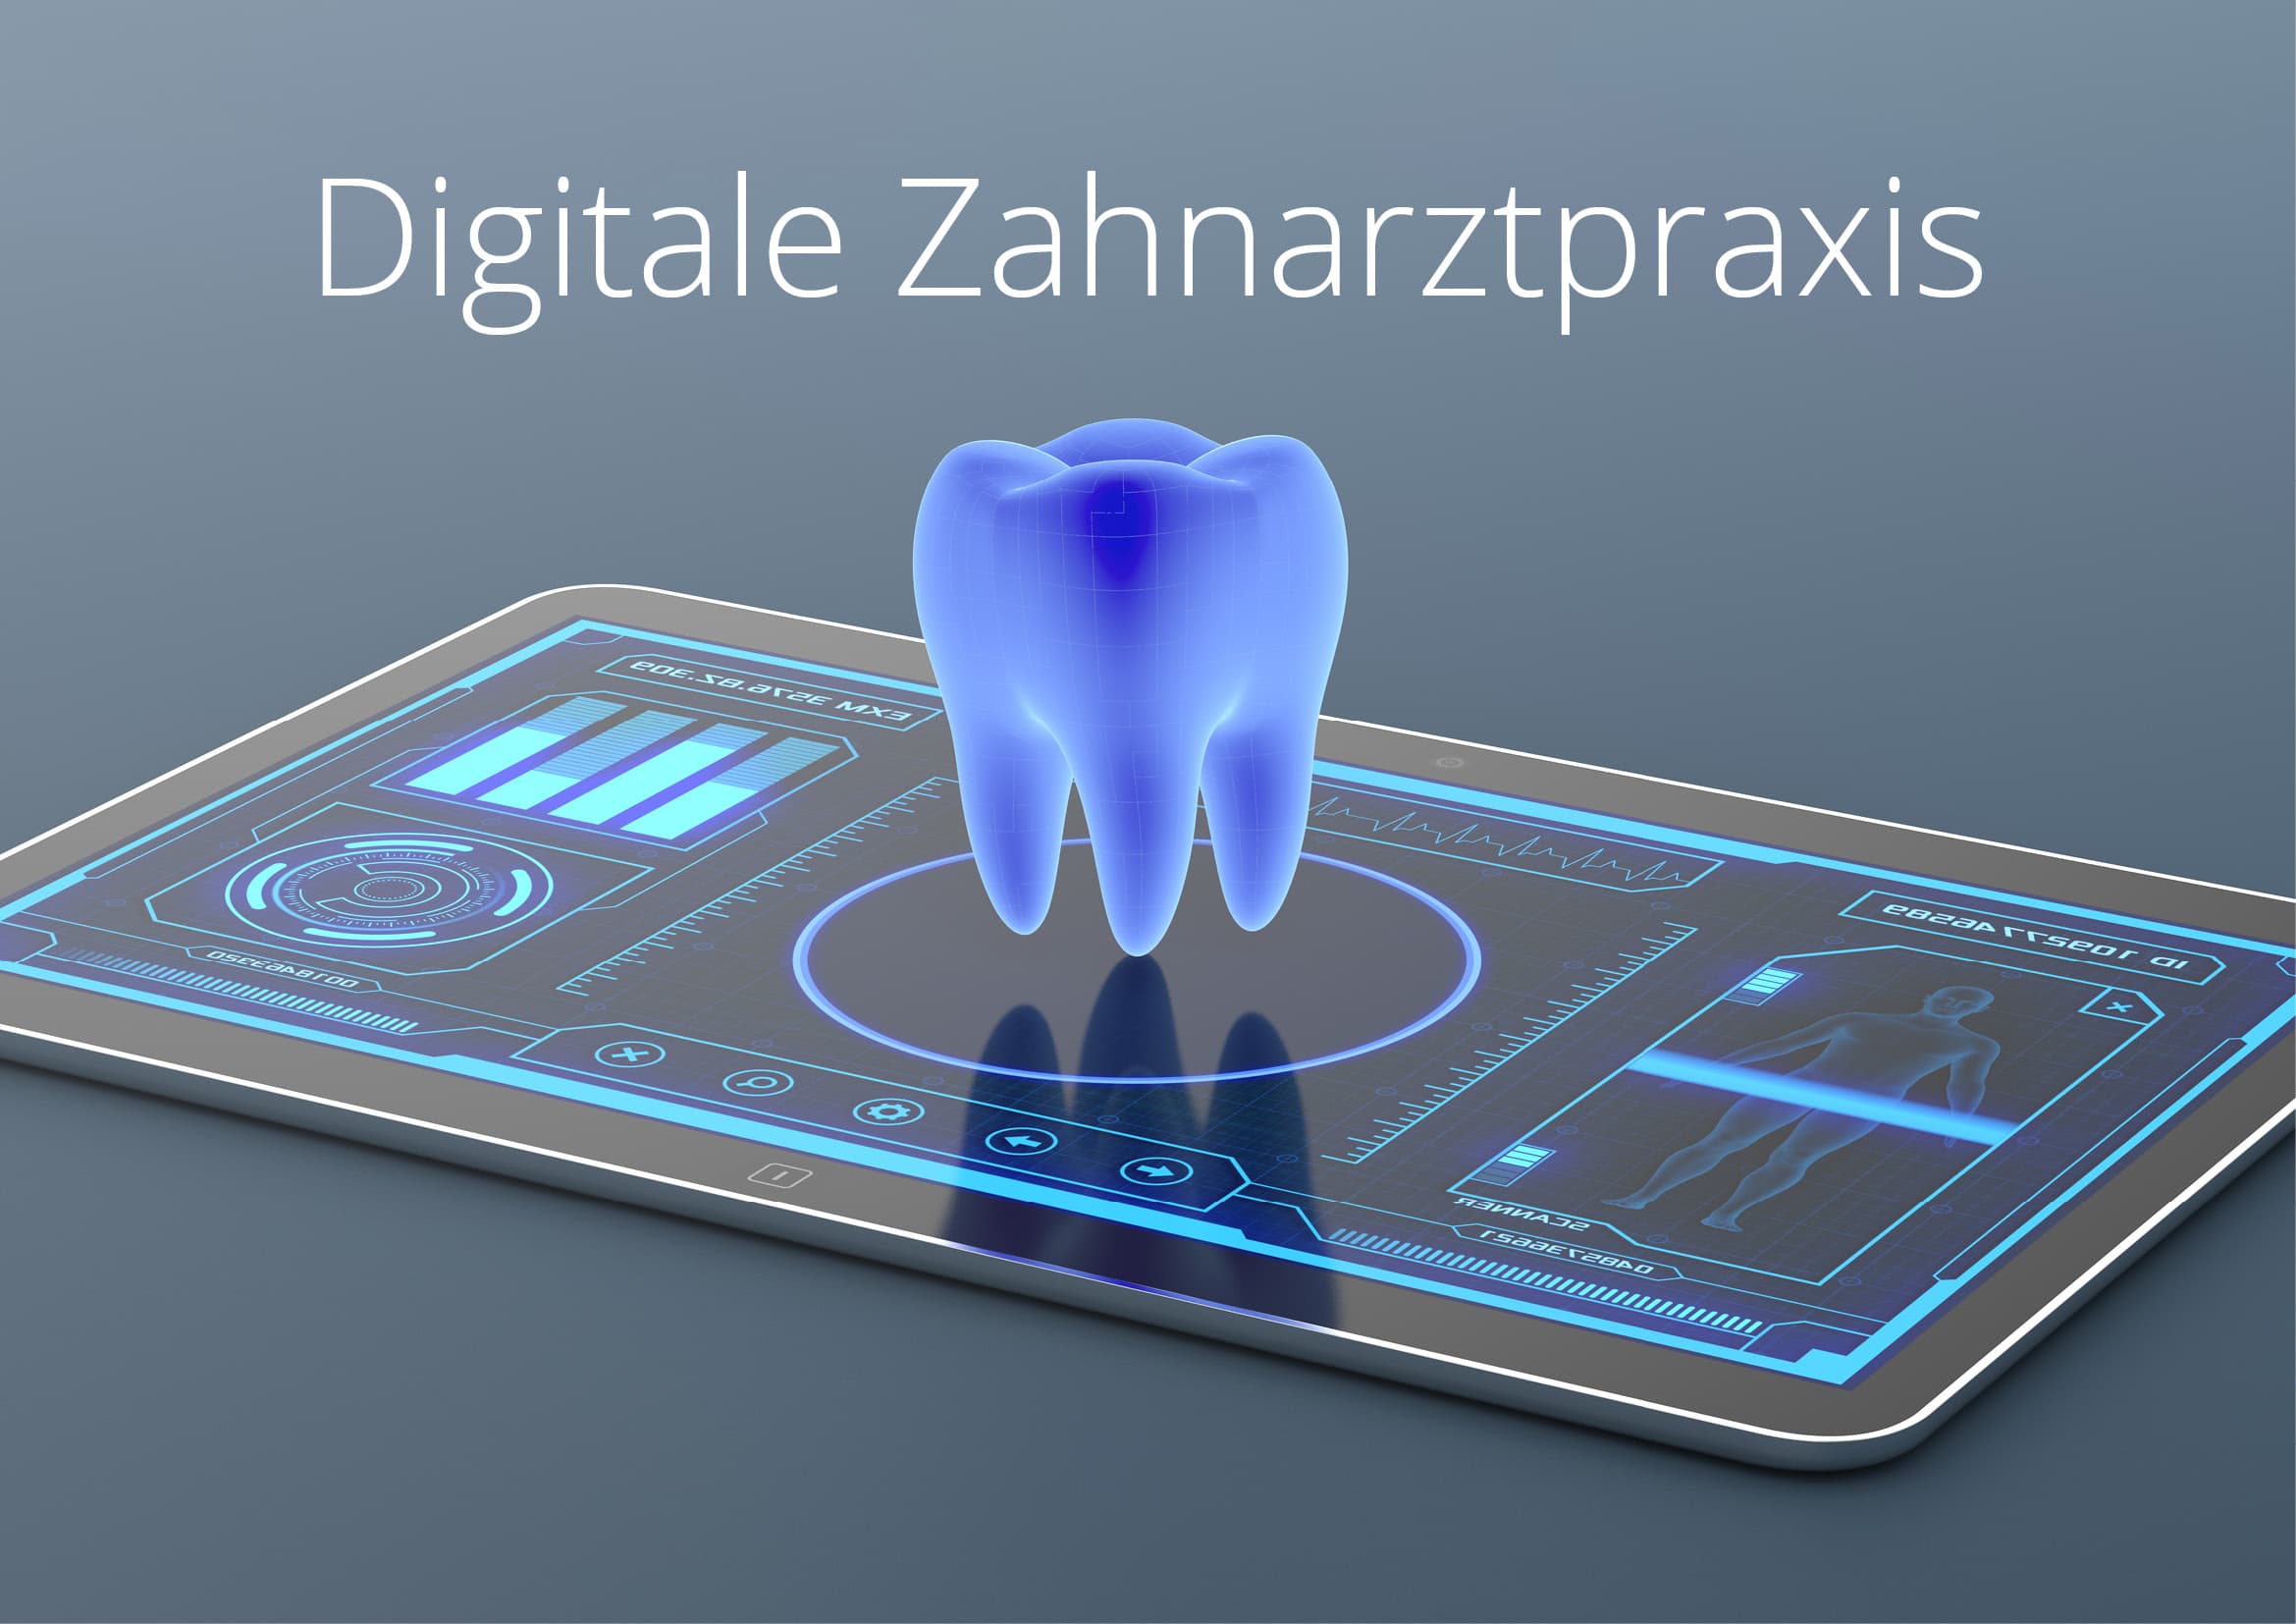 Homepage Entwicklung für digitale Zahnarztpraxis in Frankfurt am Main